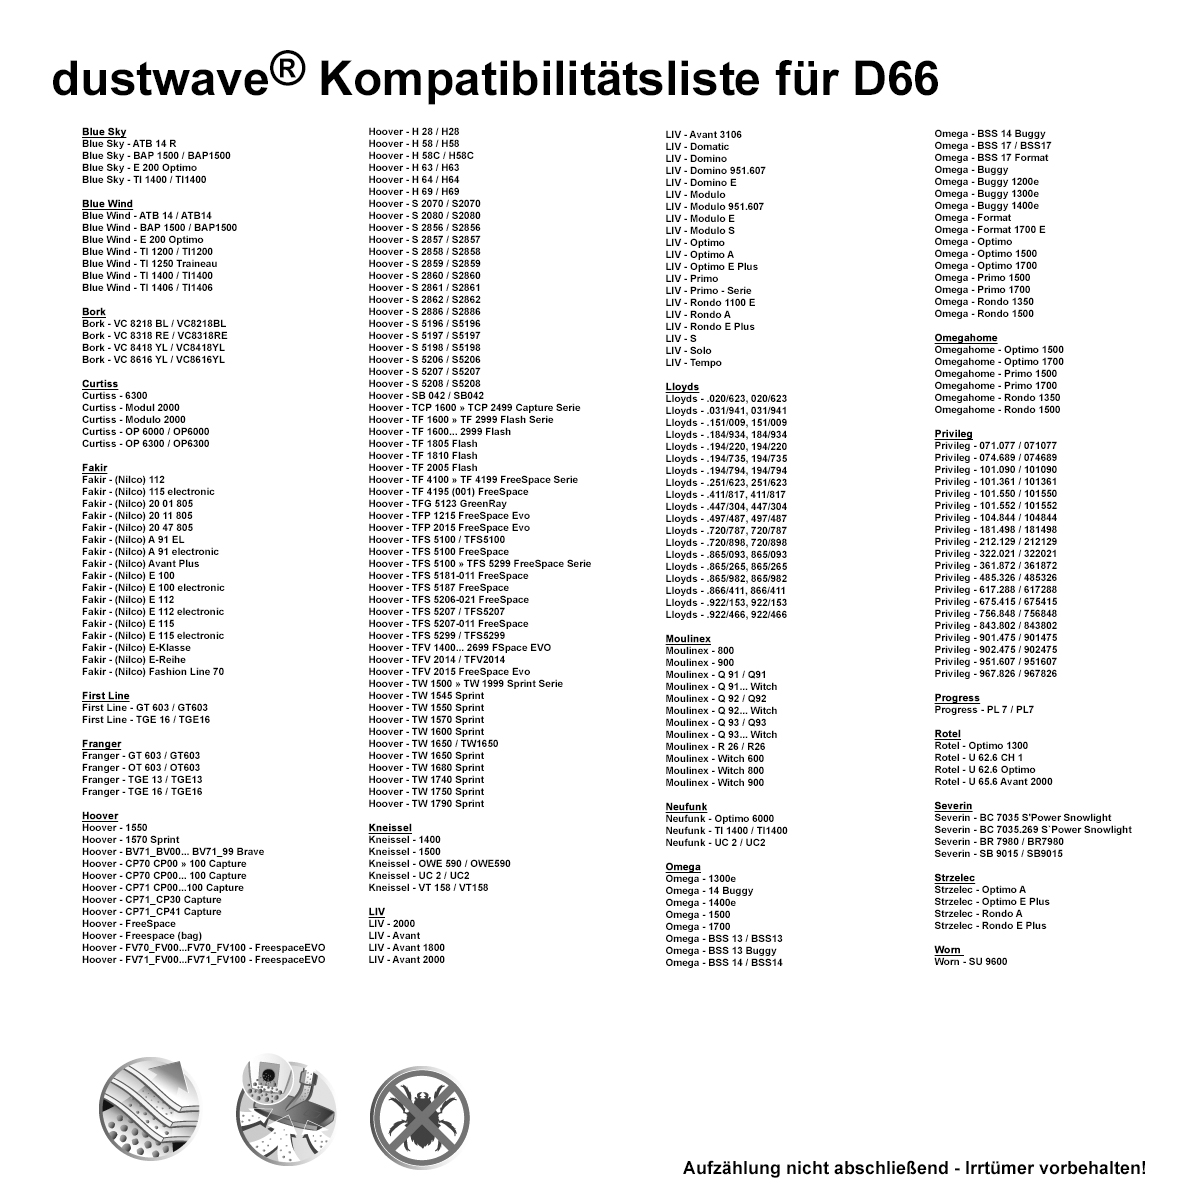 Dustwave® Premium 20 Staubsaugerbeutel für Hoover H 63 / H63 - hocheffizient, mehrlagiges Mikrovlies mit Hygieneverschluss - Made in Germany